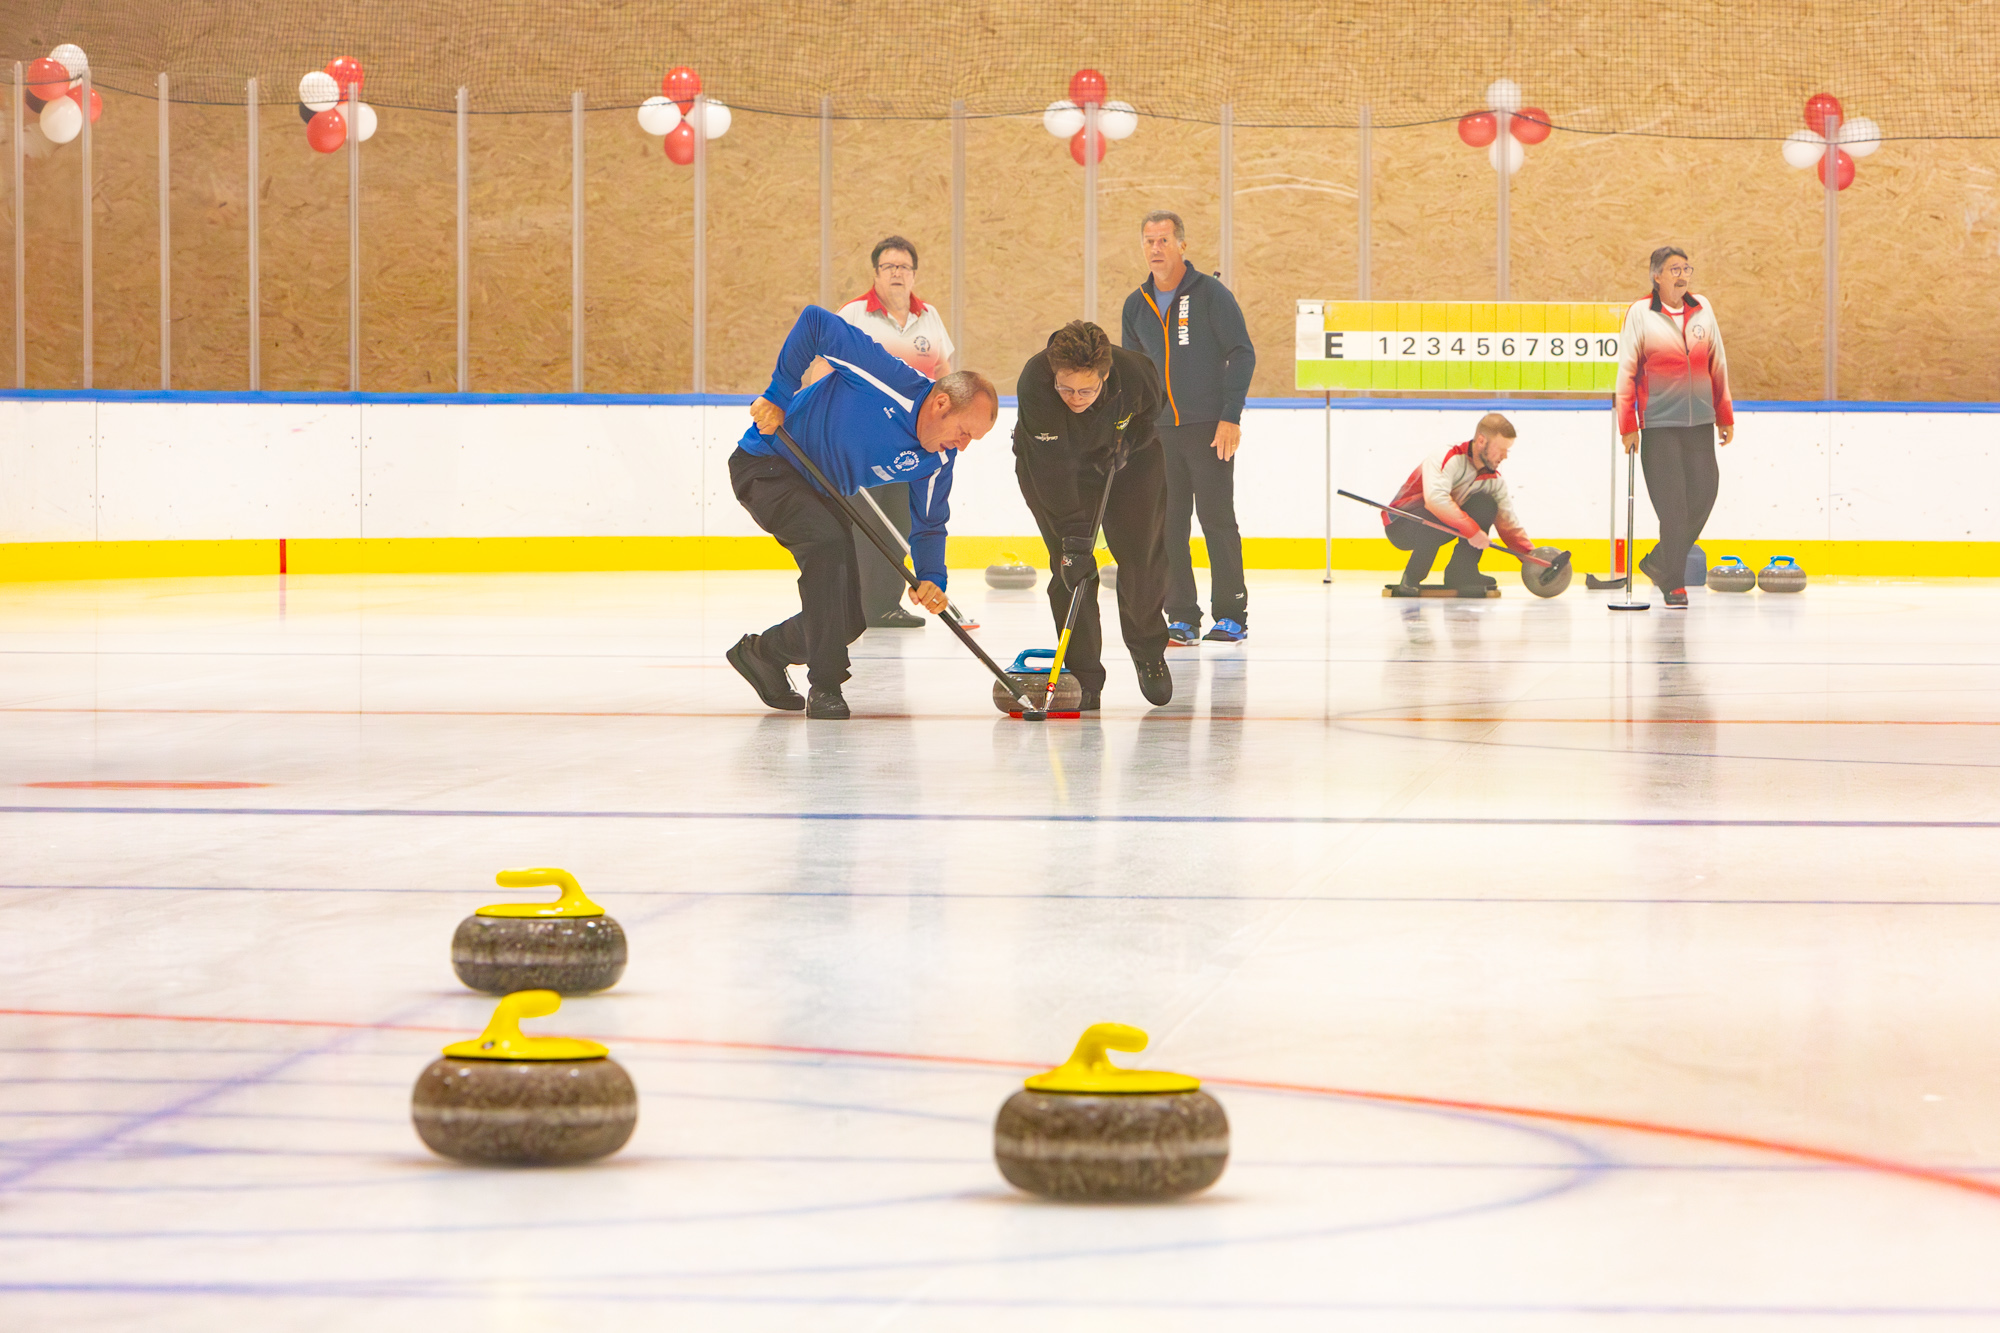 Curling-Spiel-Demonstration und selber spielen mit dem Curling Club Kloten Dorf, CCKD